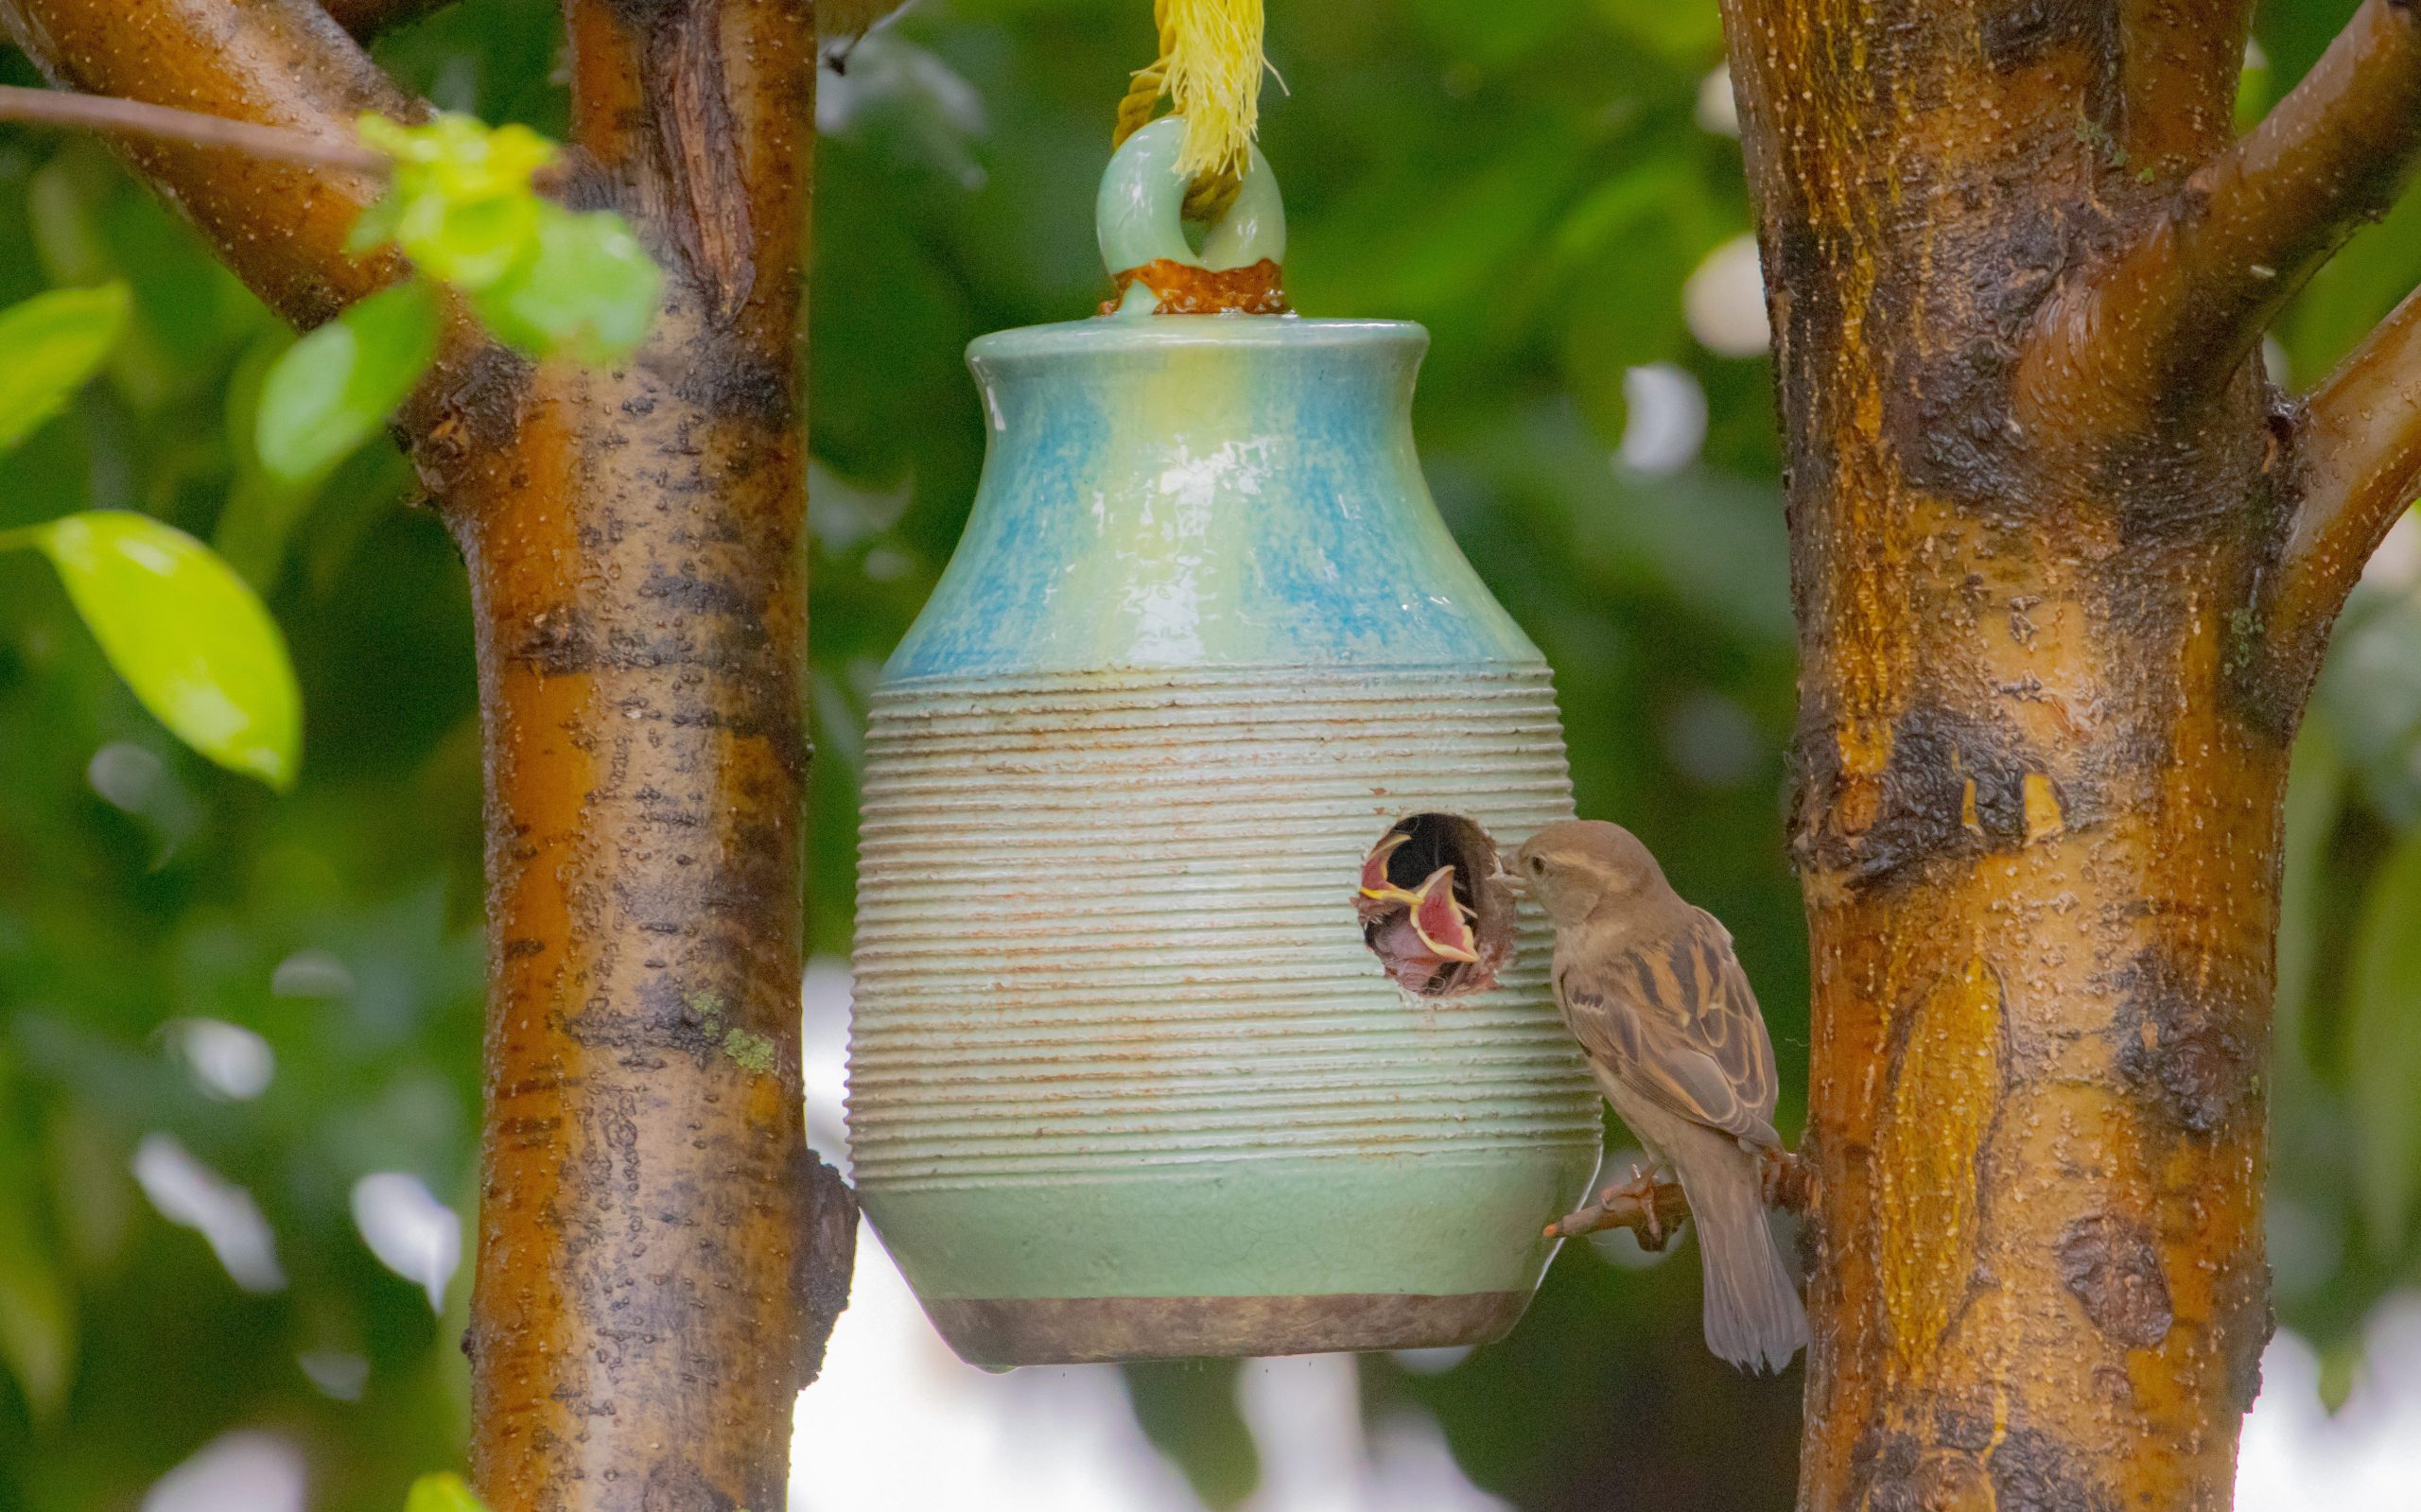 House sparrow lifespan in captivity